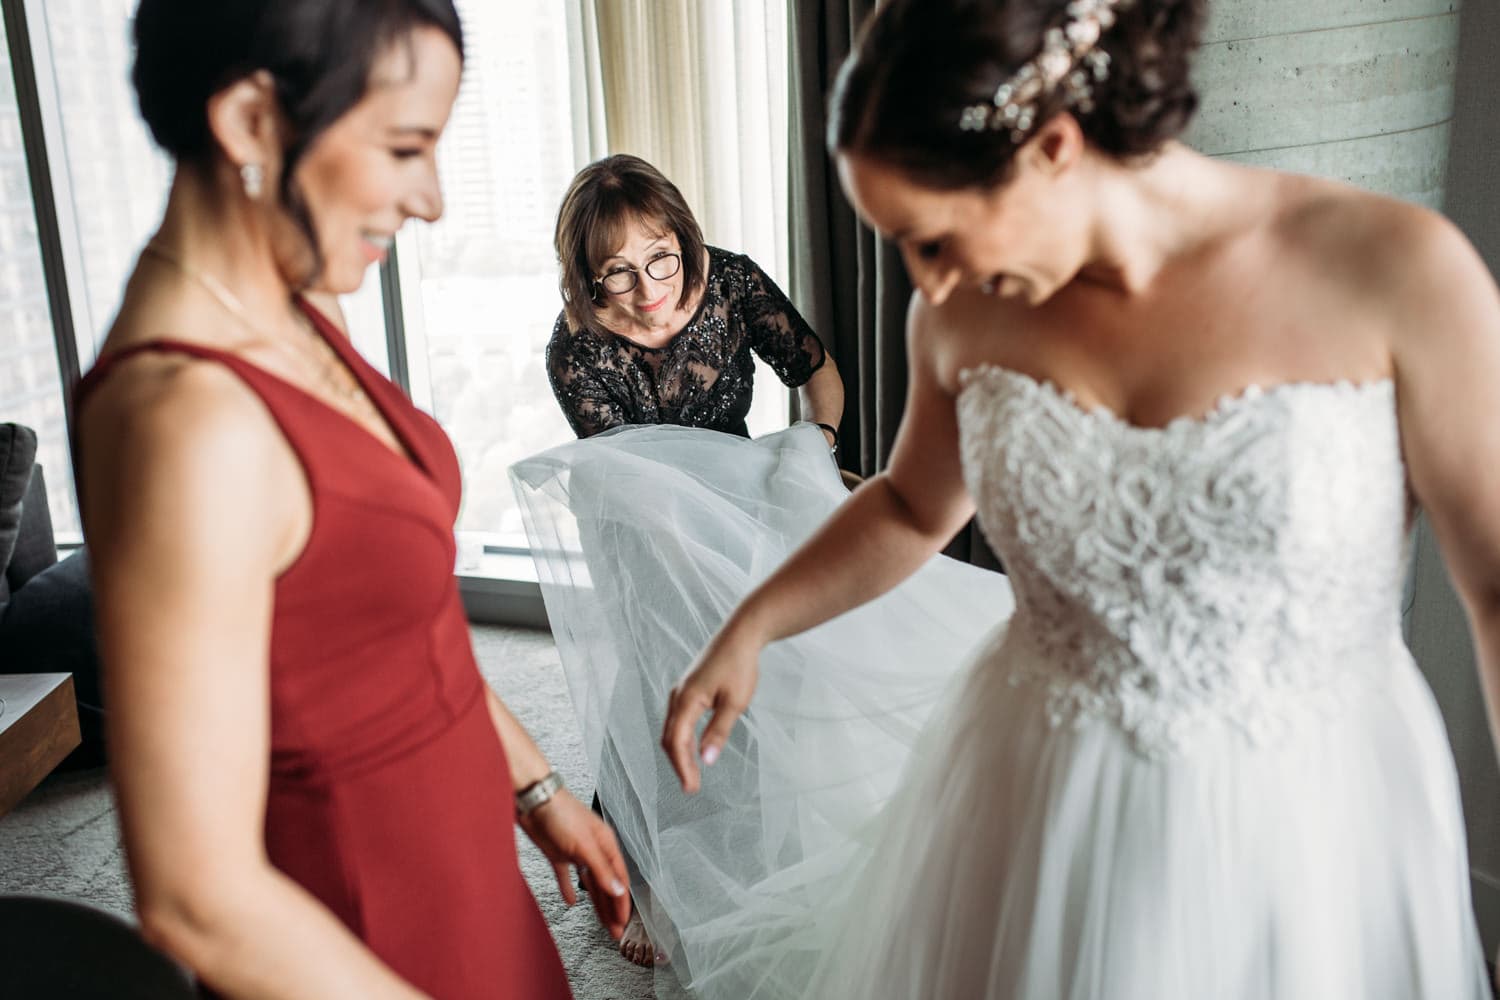 lgbtq wedding at parq hotel vancouver, bride's mom helping bride get ready